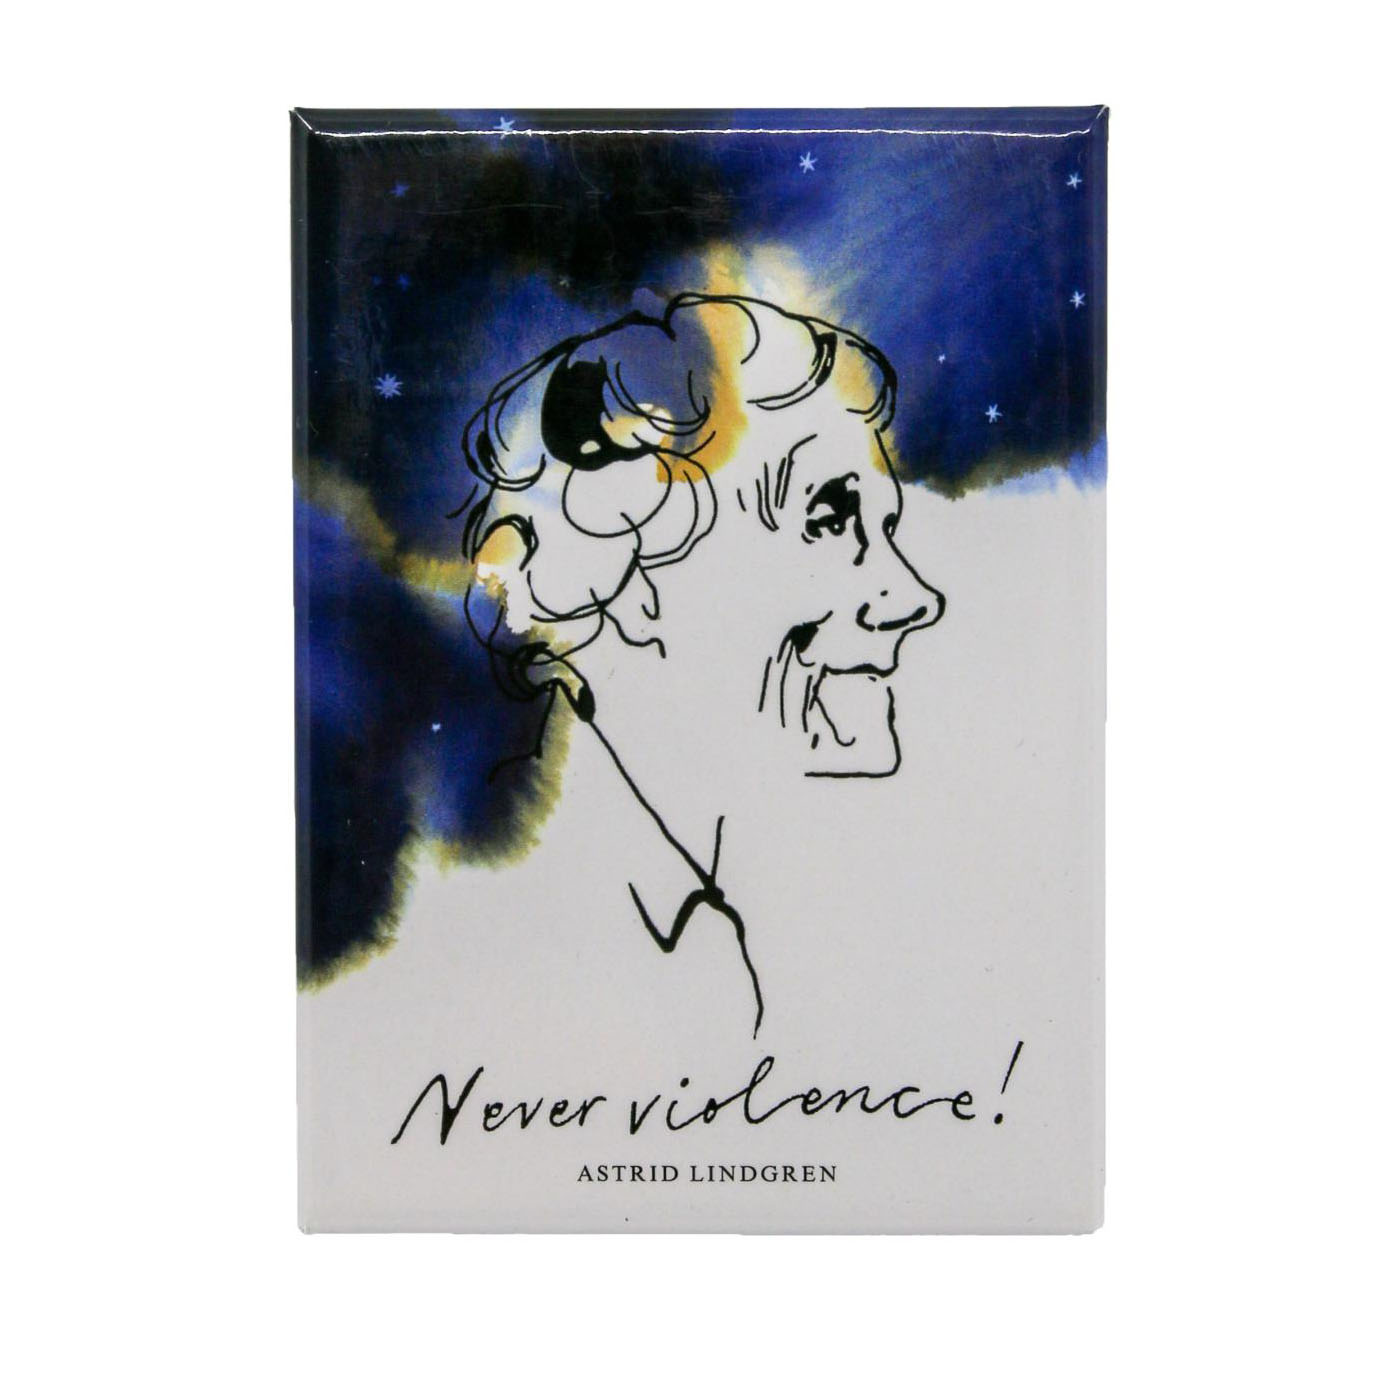 Magnet Astrid Lindgren "Never violence."